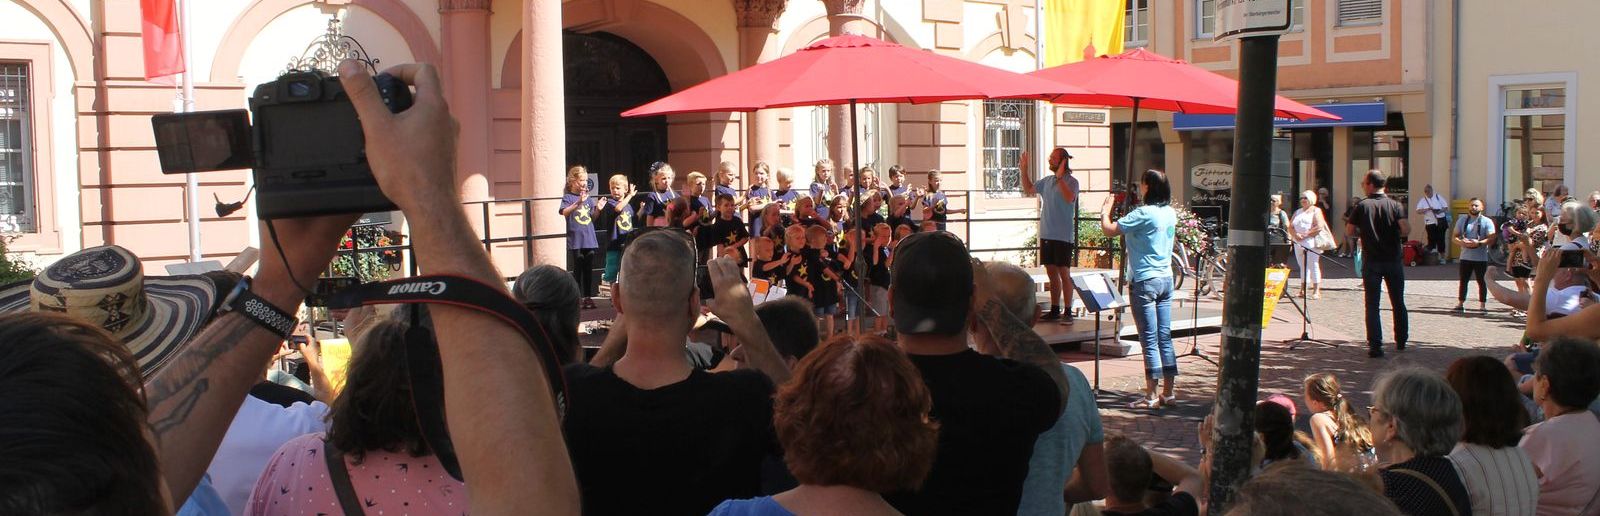 Chor singt vor dem Historischen Rathaus in Rastatt, Zuschauer stehen im Kreis herum